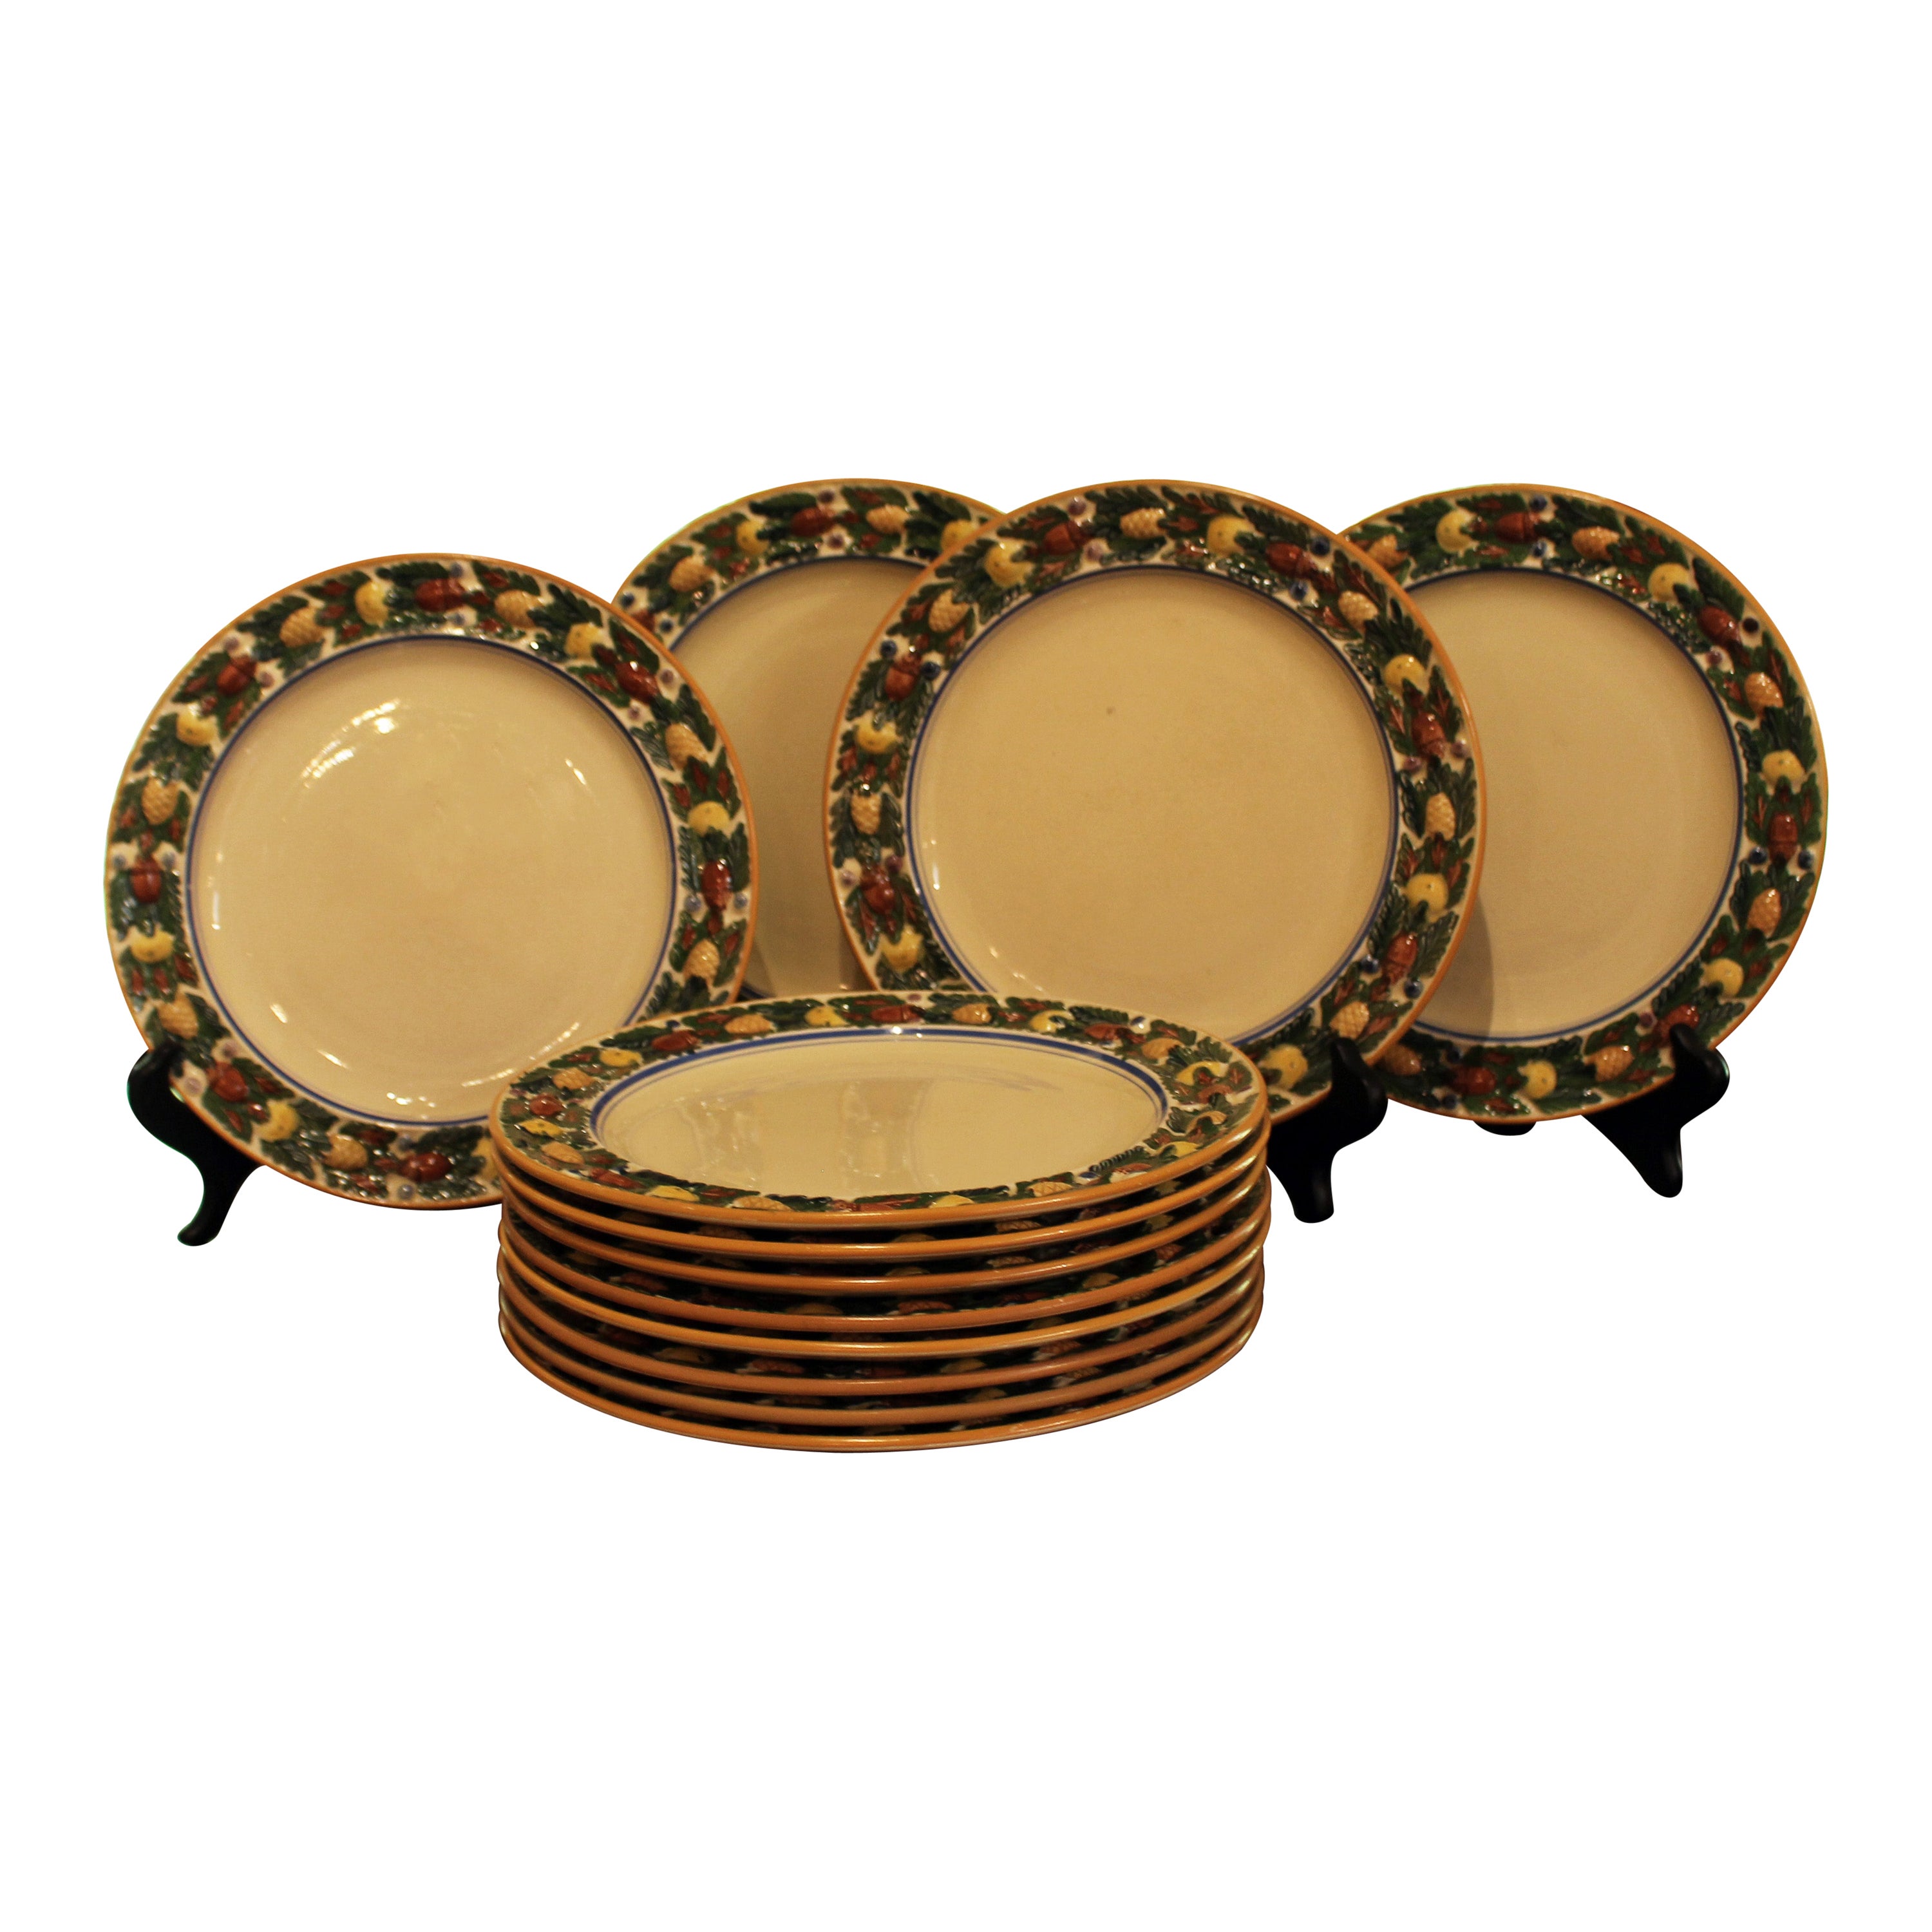 Circa 1920s "Della Robia" Bordered Titian Ware Dinner Plates Set of 12